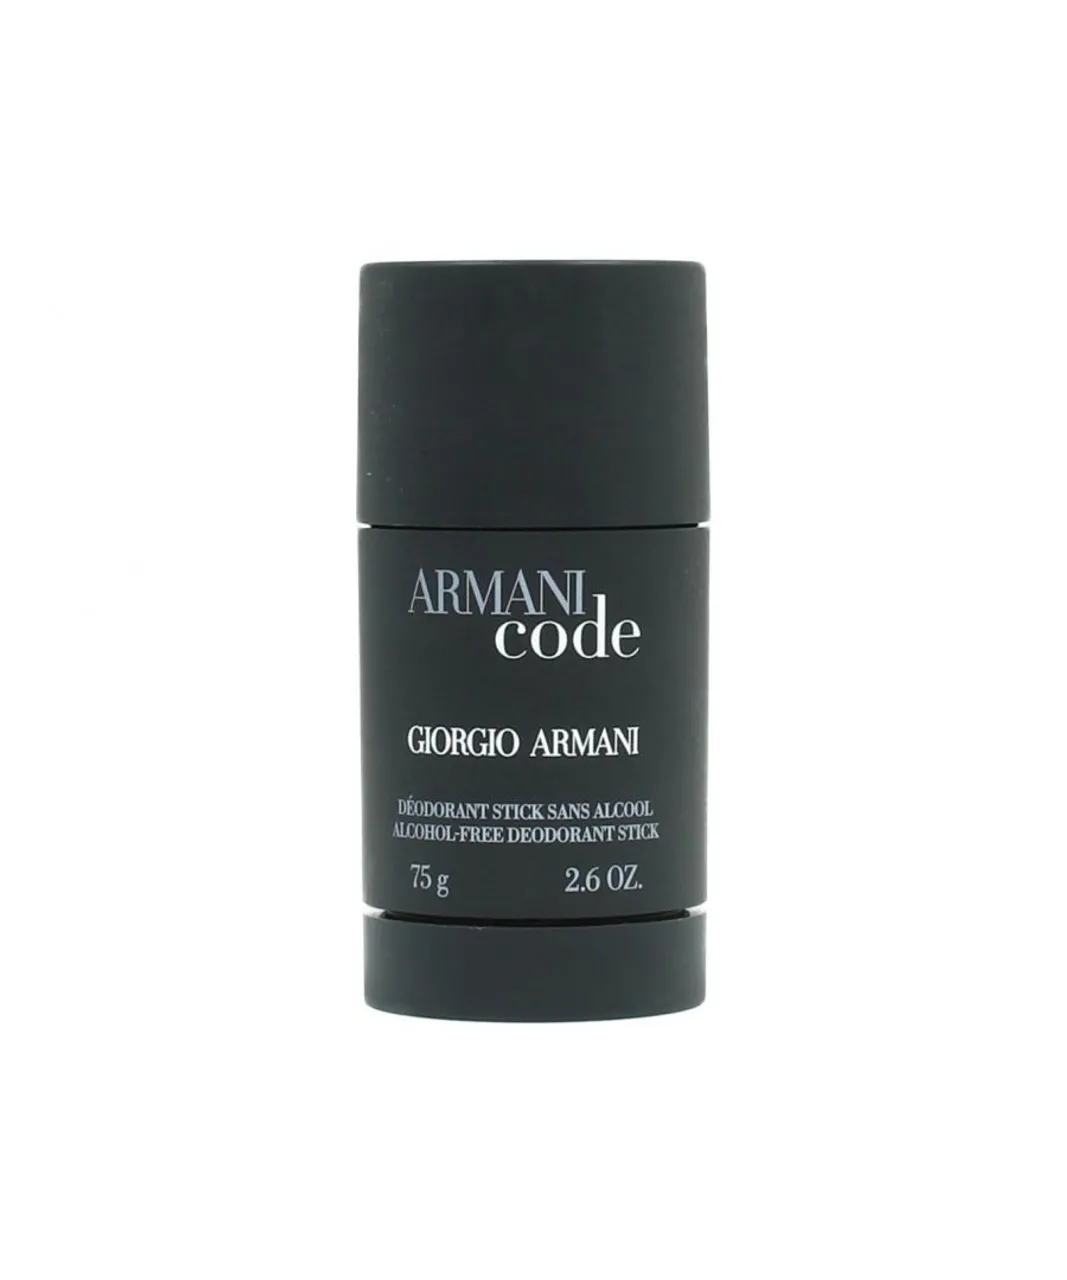 Giorgio Armani Mens Code Alcohol-Free Deodorant Stick 75g For Him - One Size